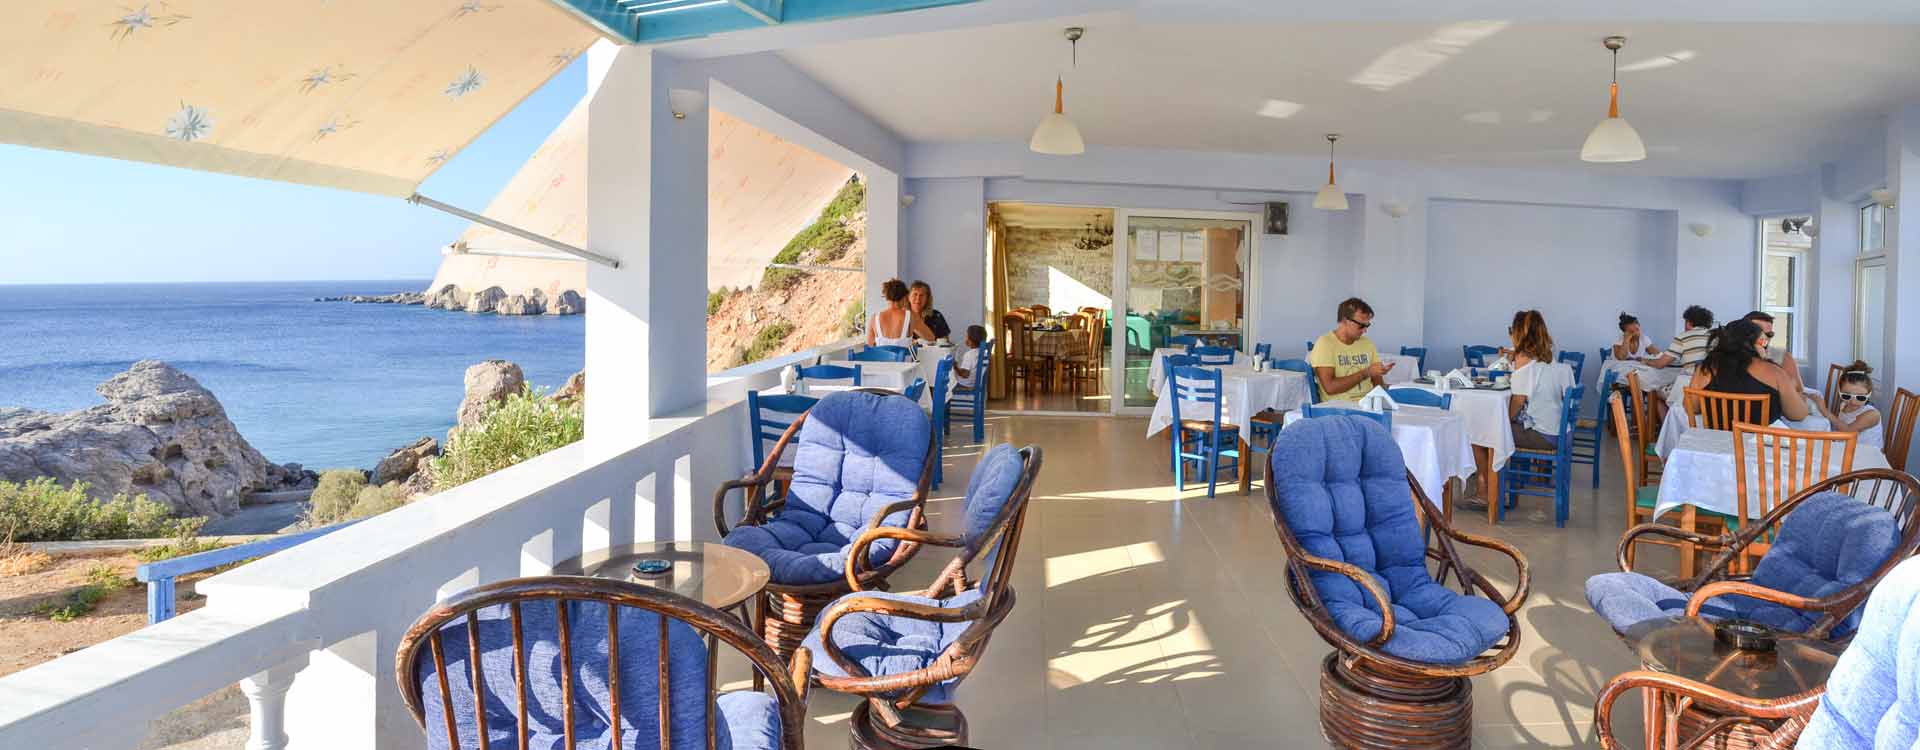 Enjoy breakfast, lunch or dinner in an idyllic landscape of Karpathos island, Greece